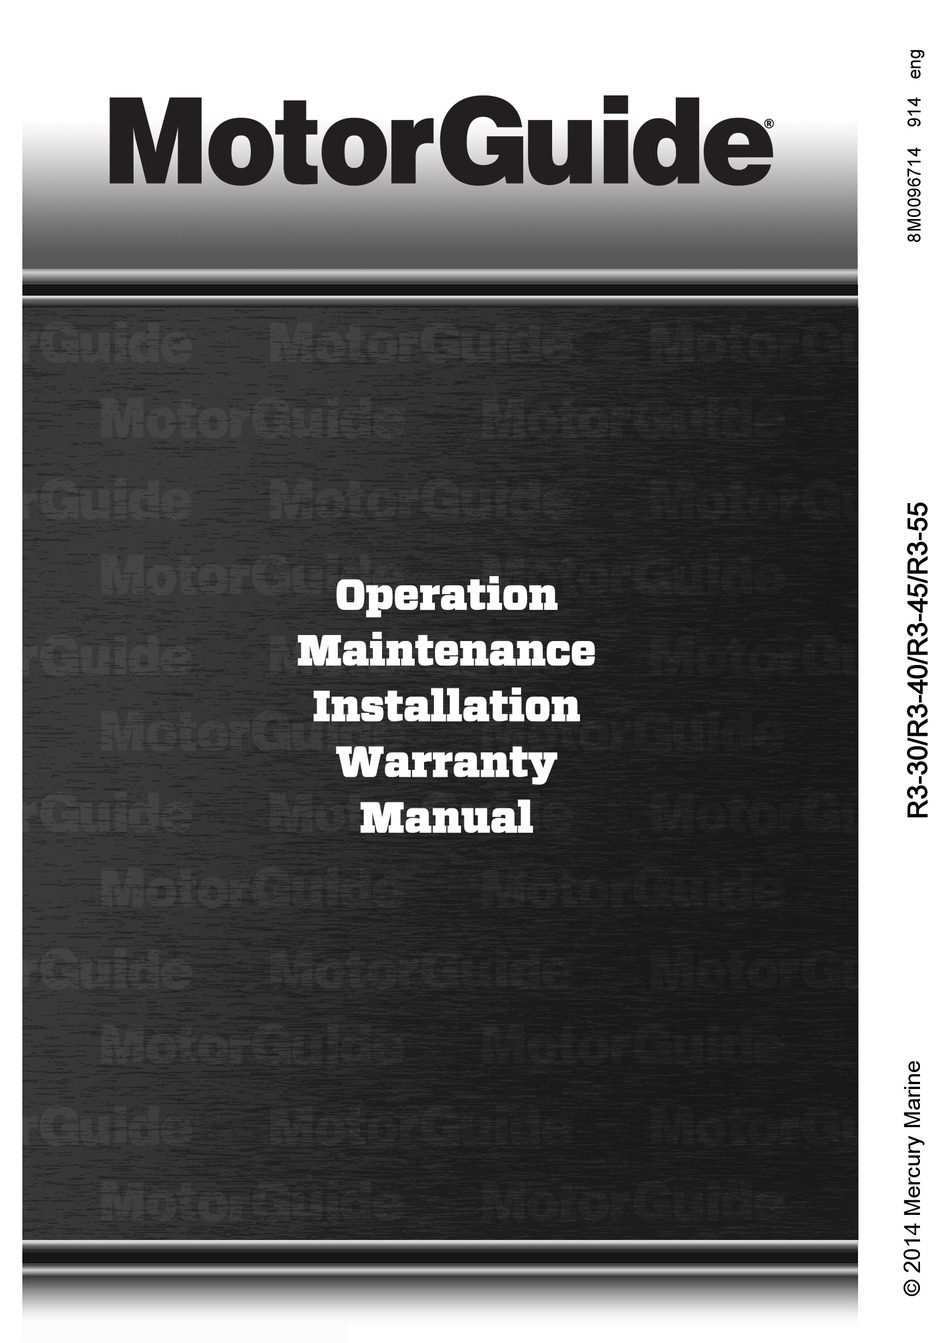 mercury motor warranty